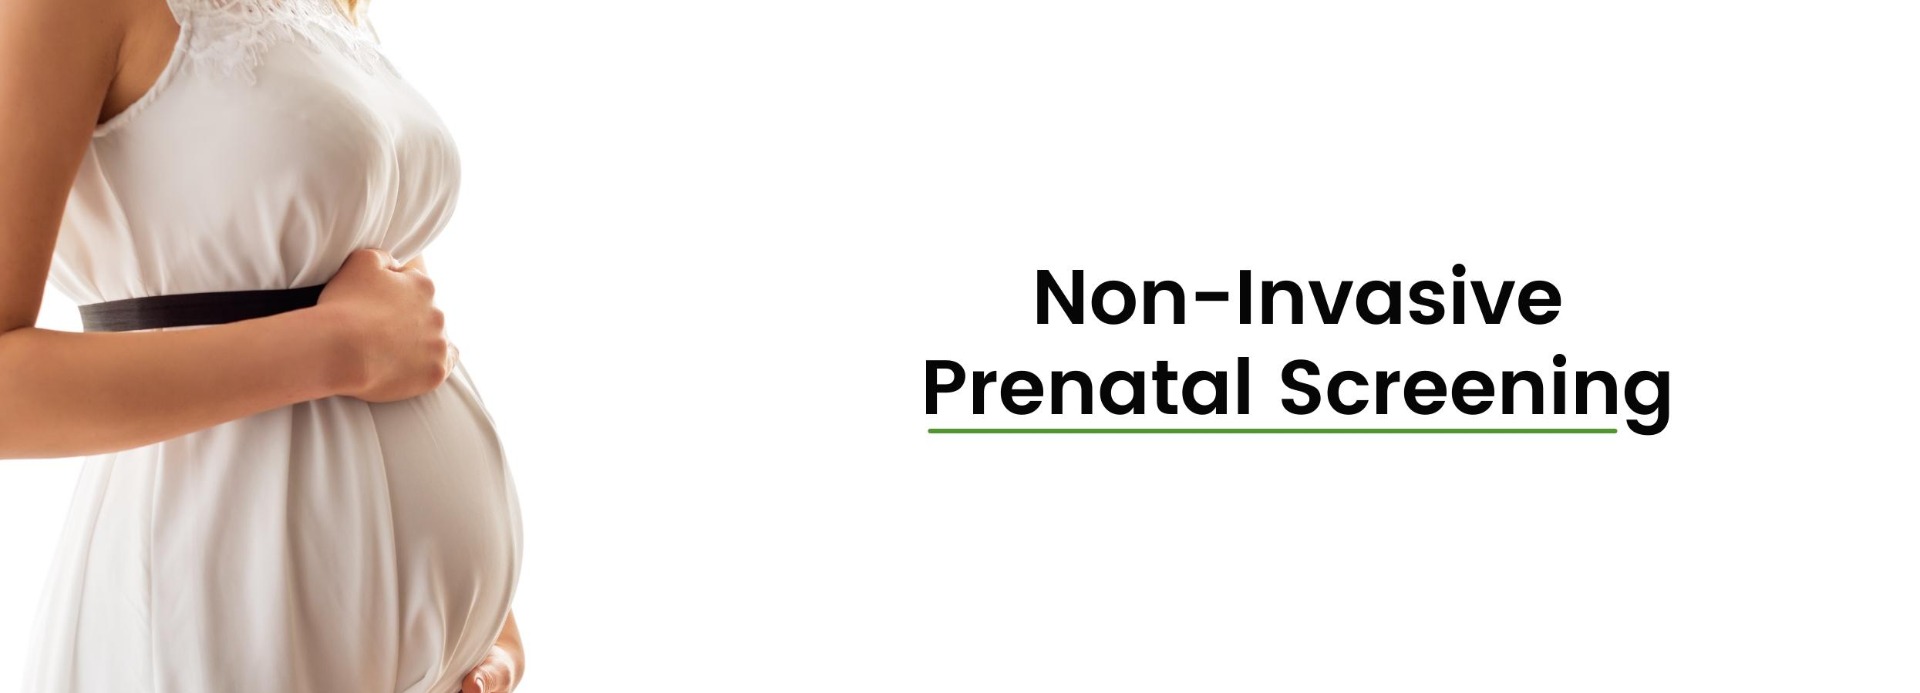 NIPT prenatal